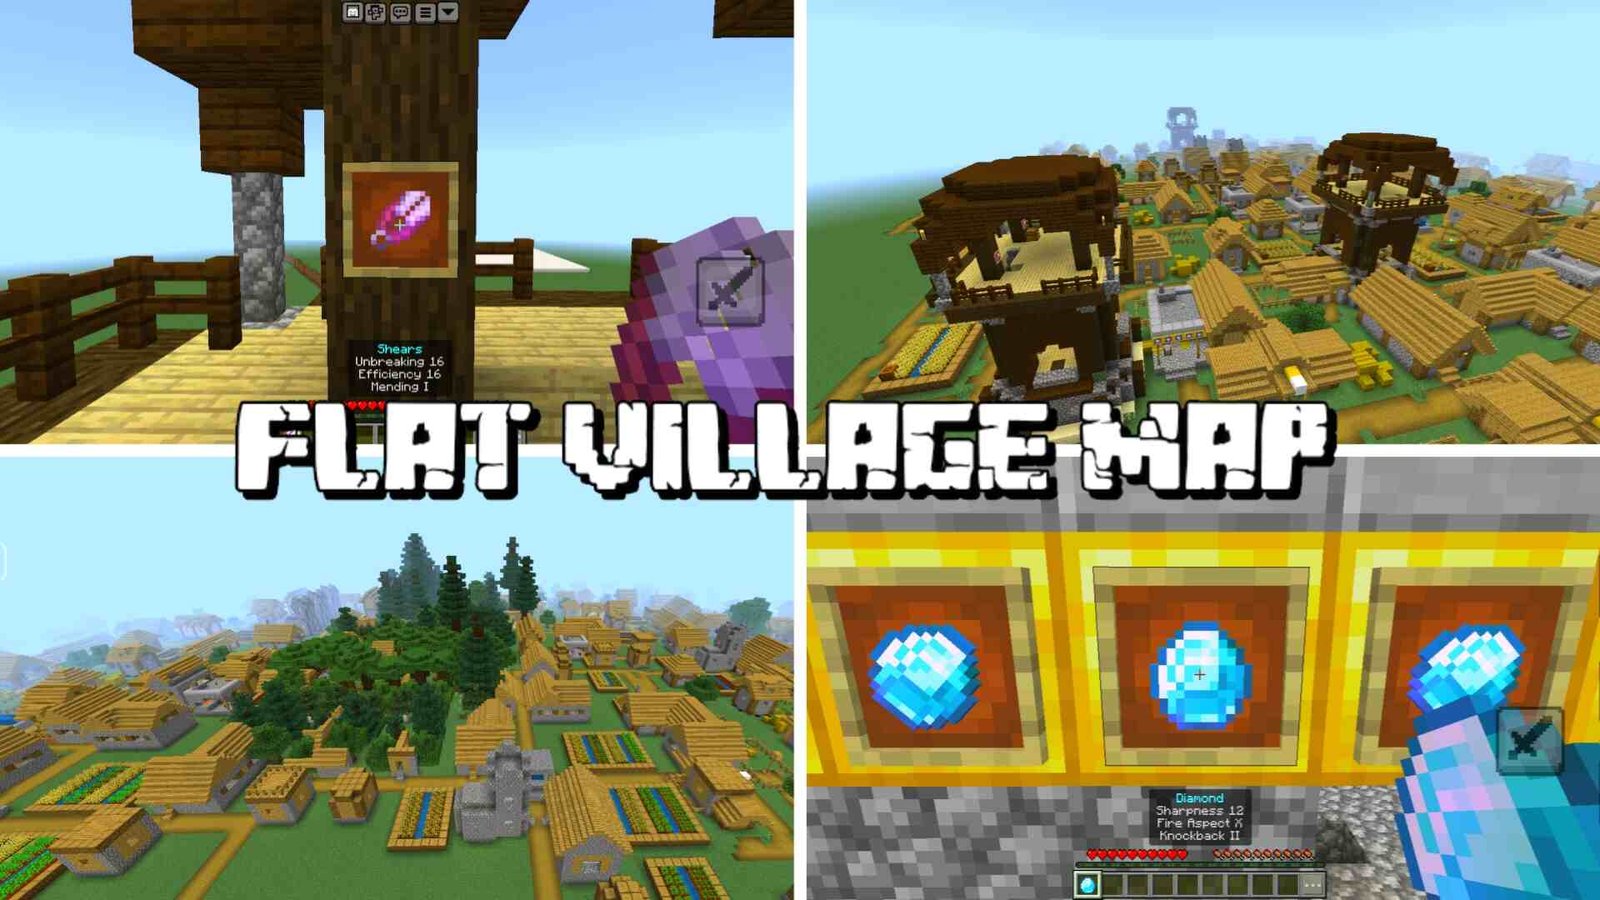 Minecraft Flat World Village Map